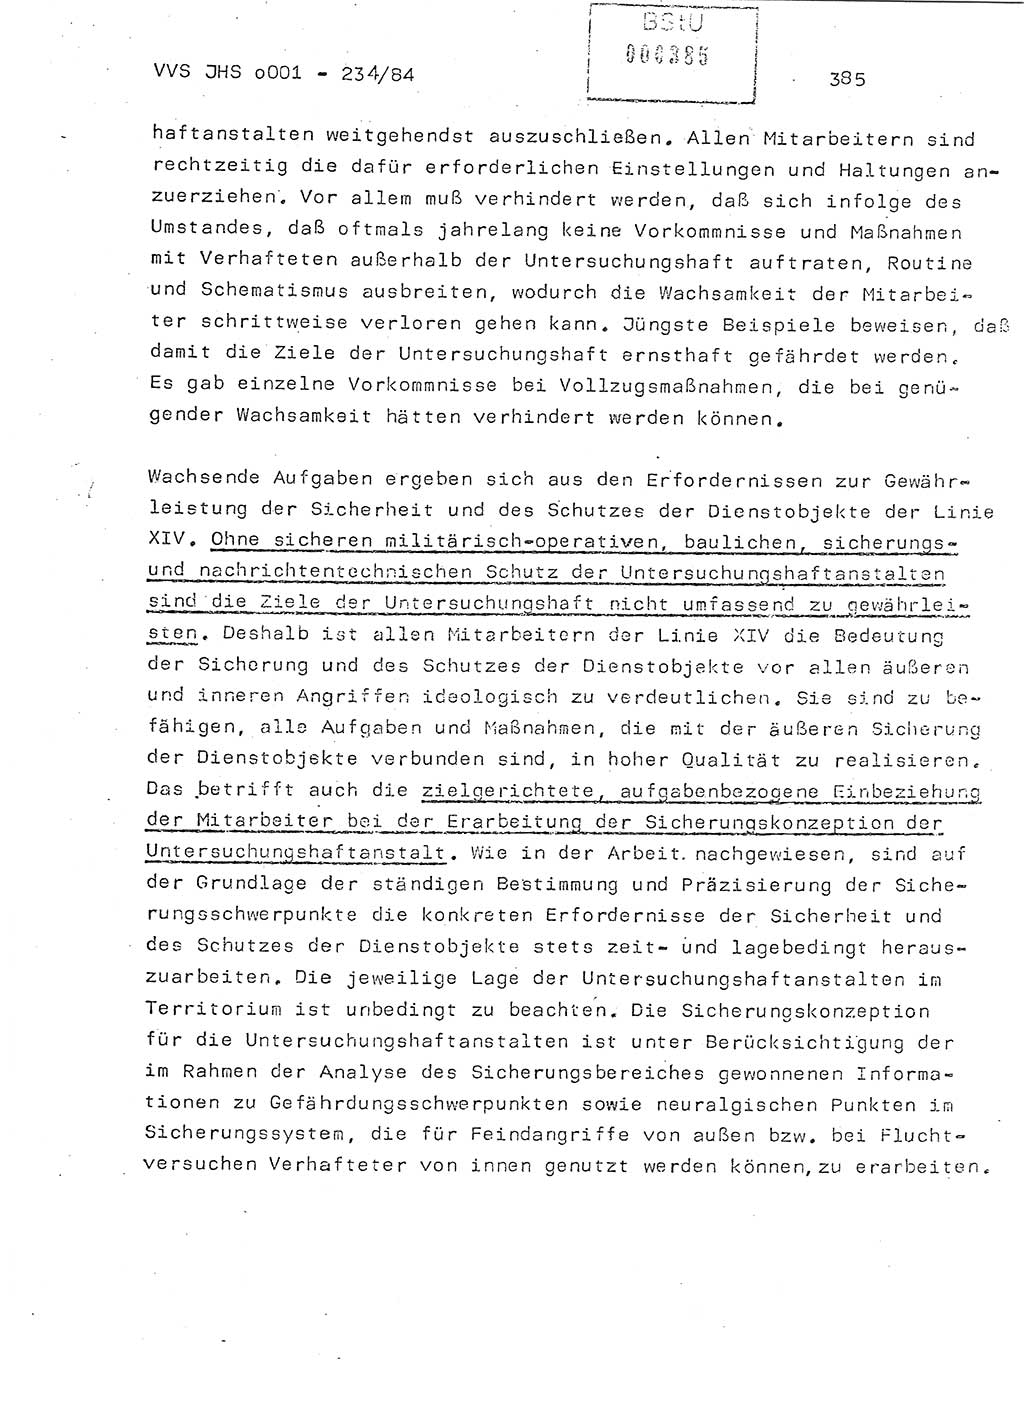 Dissertation Oberst Siegfried Rataizick (Abt. ⅩⅣ), Oberstleutnant Volkmar Heinz (Abt. ⅩⅣ), Oberstleutnant Werner Stein (HA Ⅸ), Hauptmann Heinz Conrad (JHS), Ministerium für Staatssicherheit (MfS) [Deutsche Demokratische Republik (DDR)], Juristische Hochschule (JHS), Vertrauliche Verschlußsache (VVS) o001-234/84, Potsdam 1984, Seite 385 (Diss. MfS DDR JHS VVS o001-234/84 1984, S. 385)